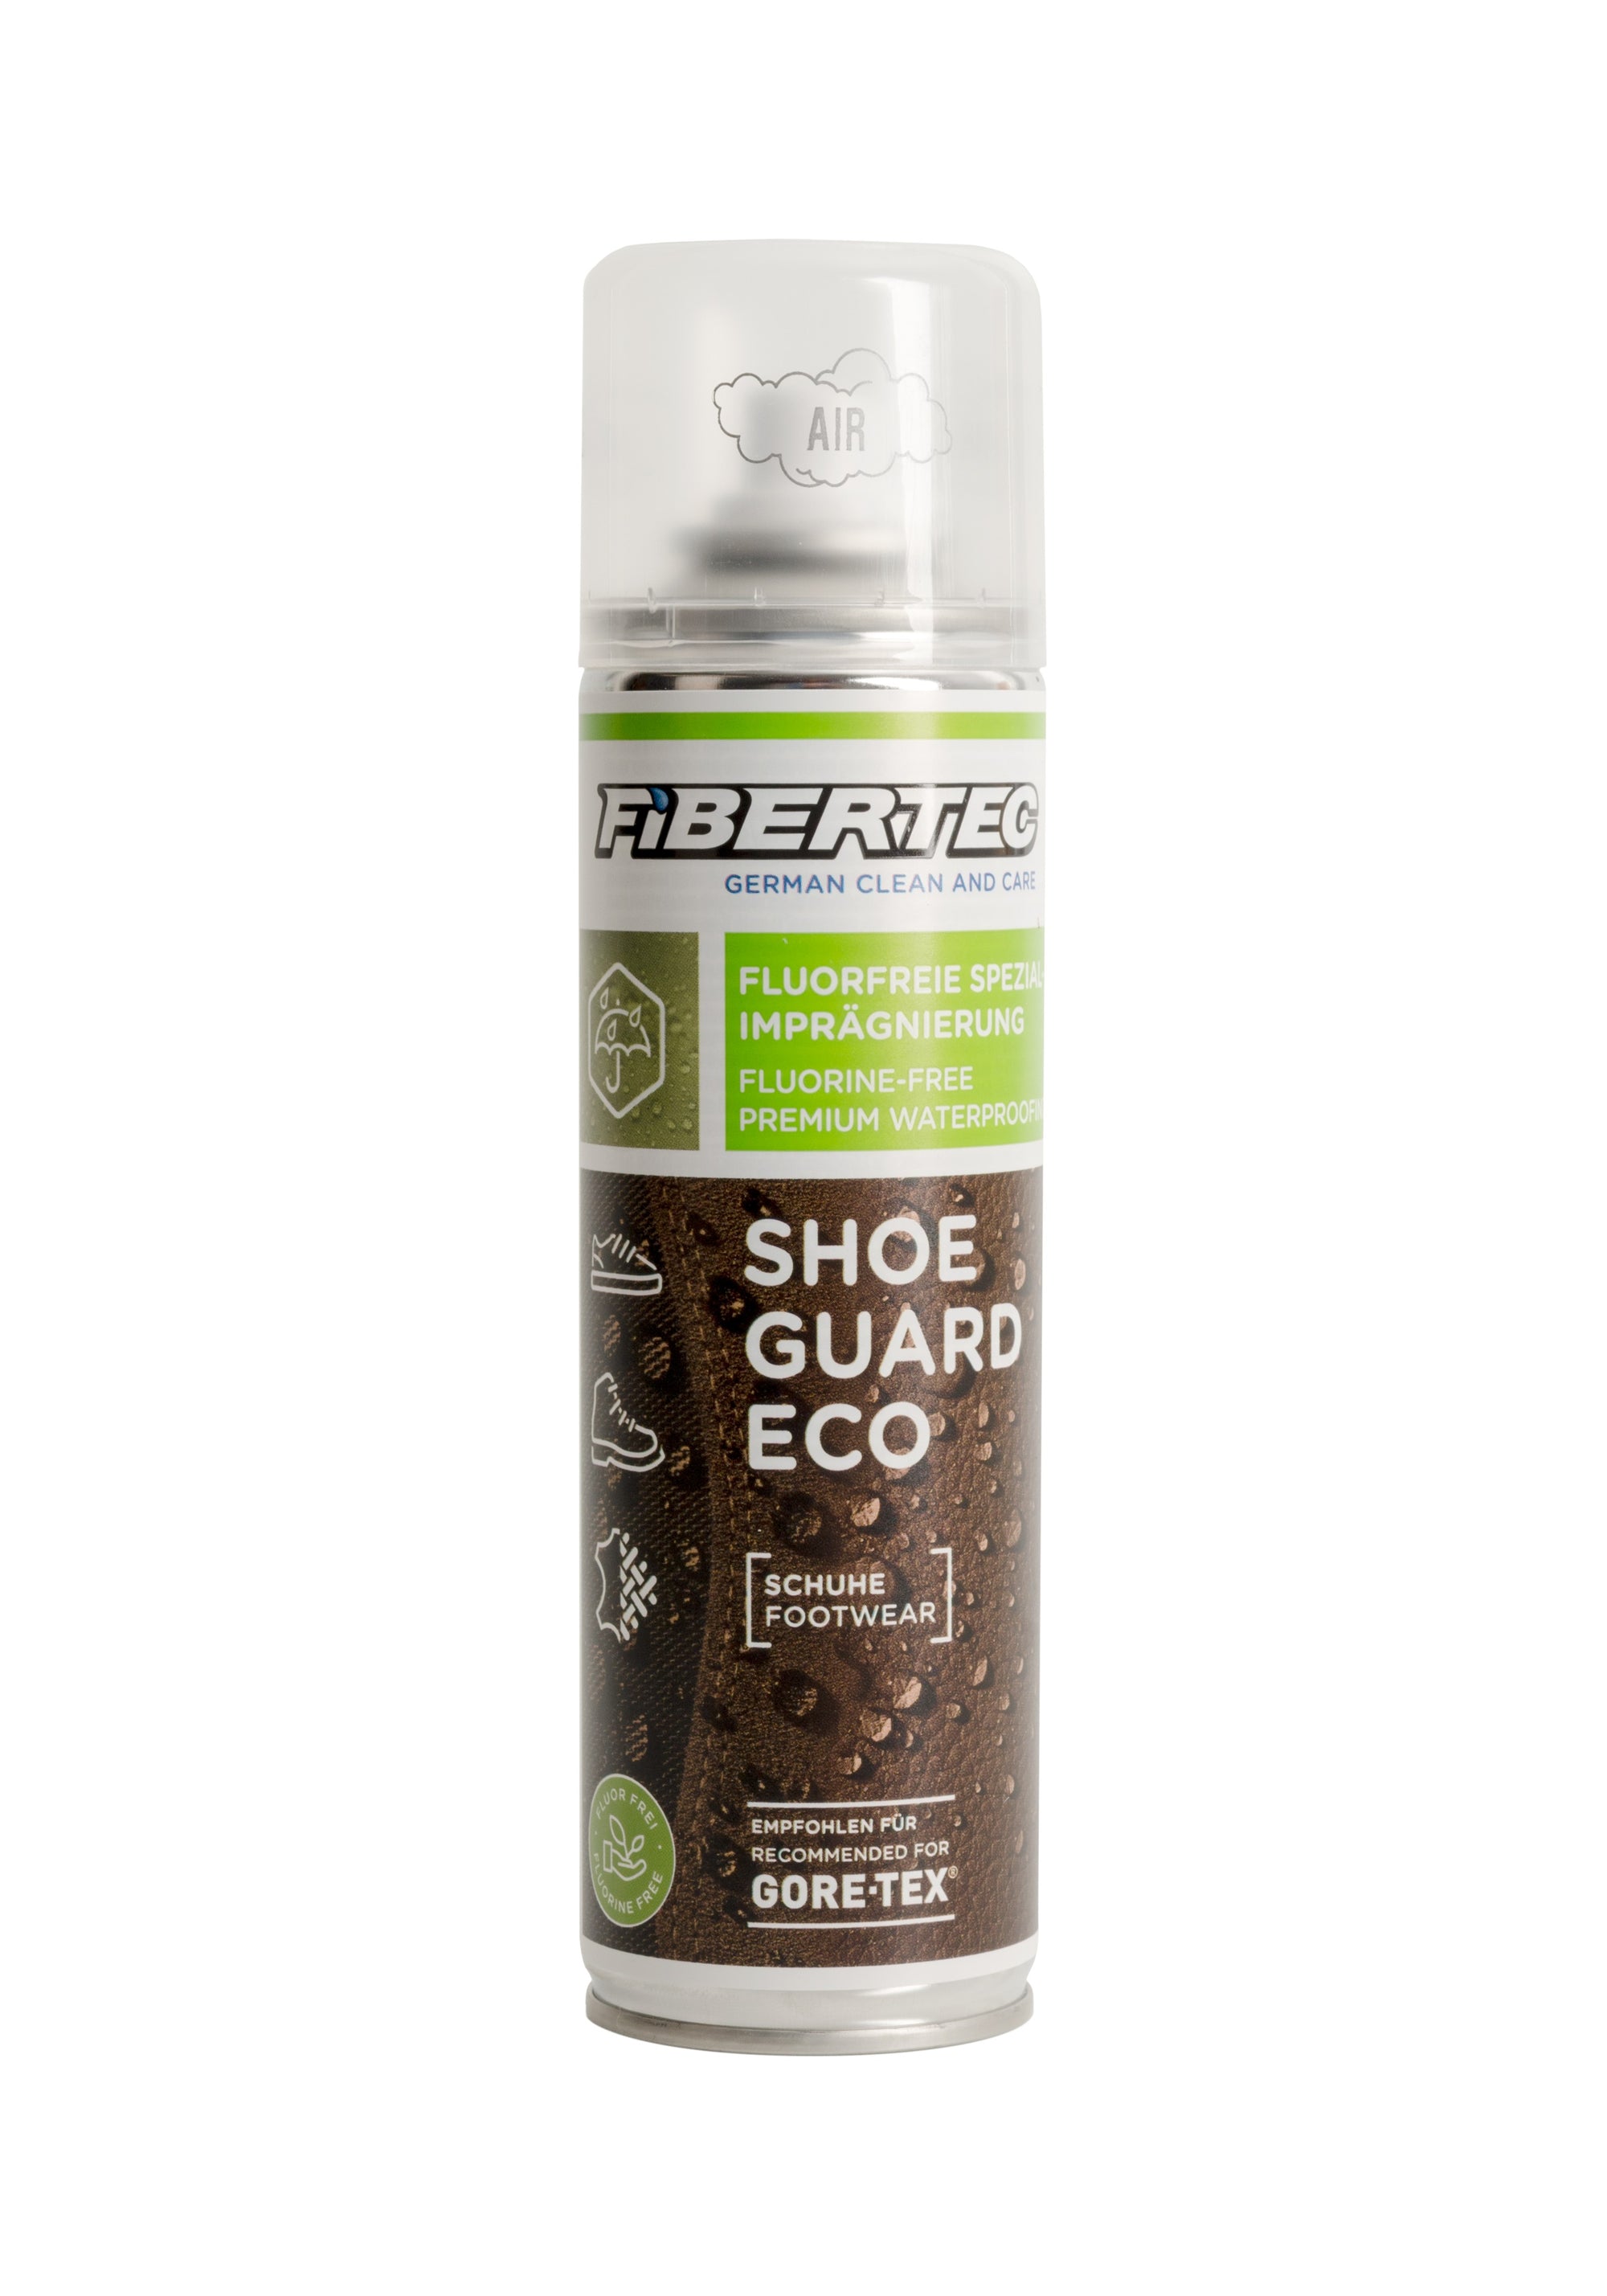 Fibertec Shoe Guard Eco -200ml